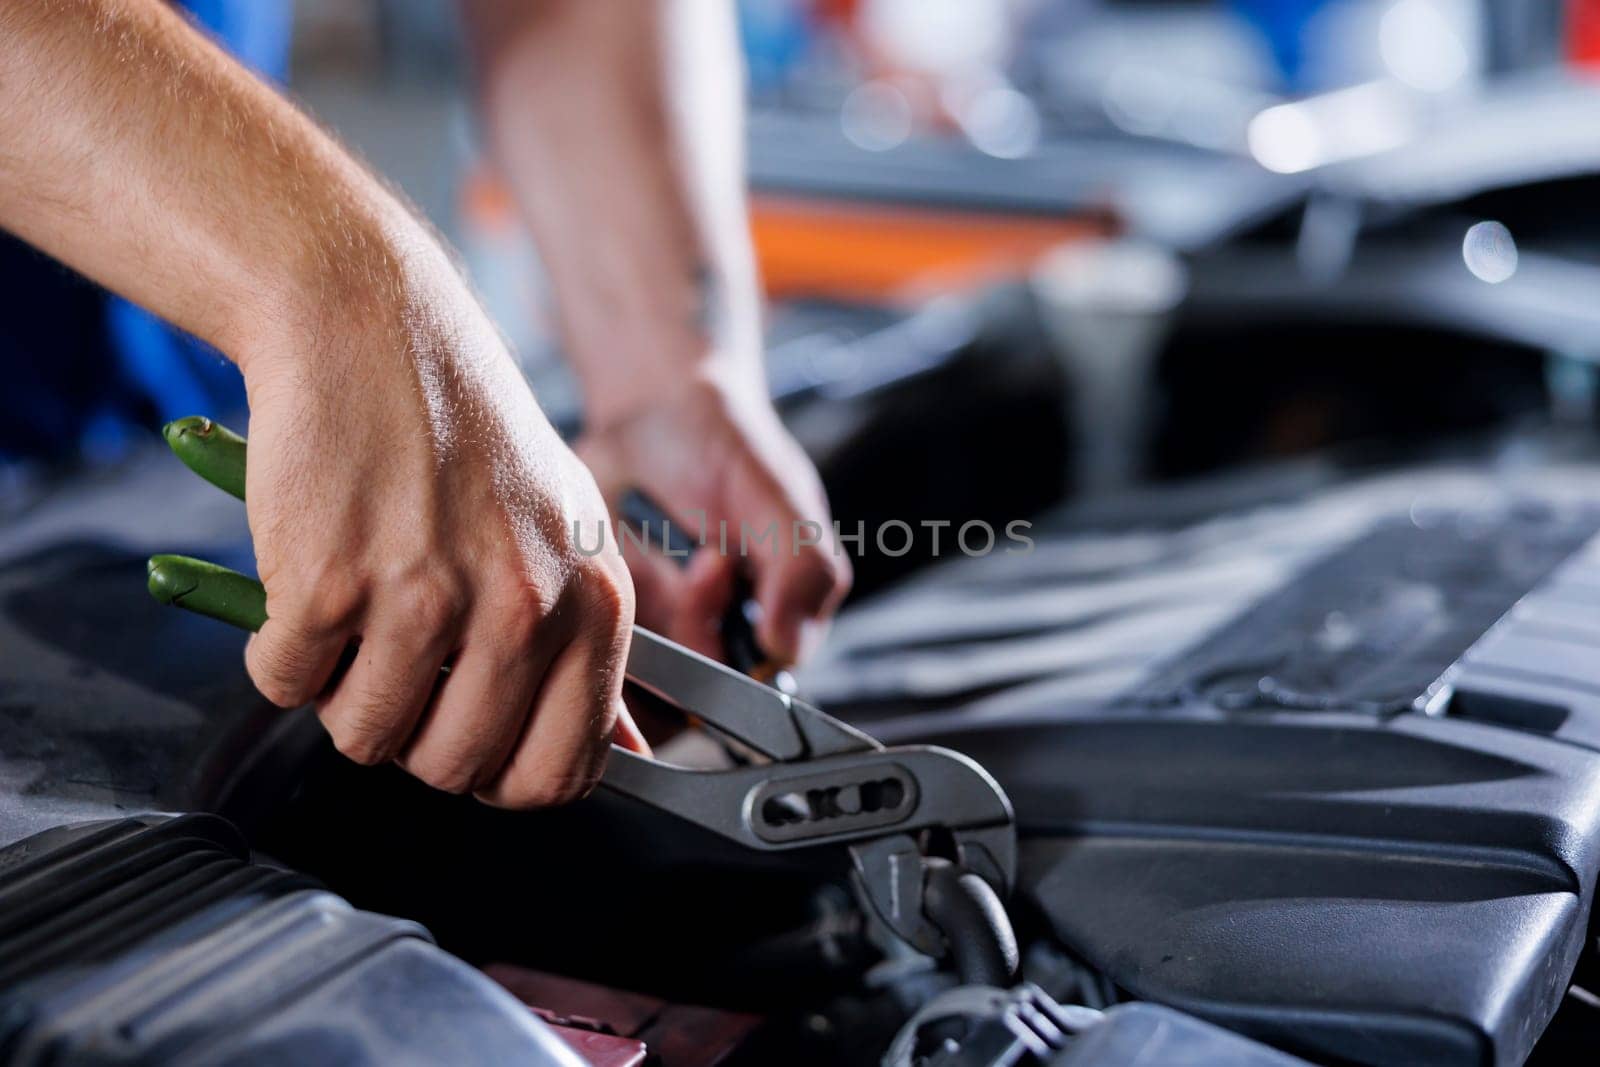 Car service technician uses pliers by DCStudio